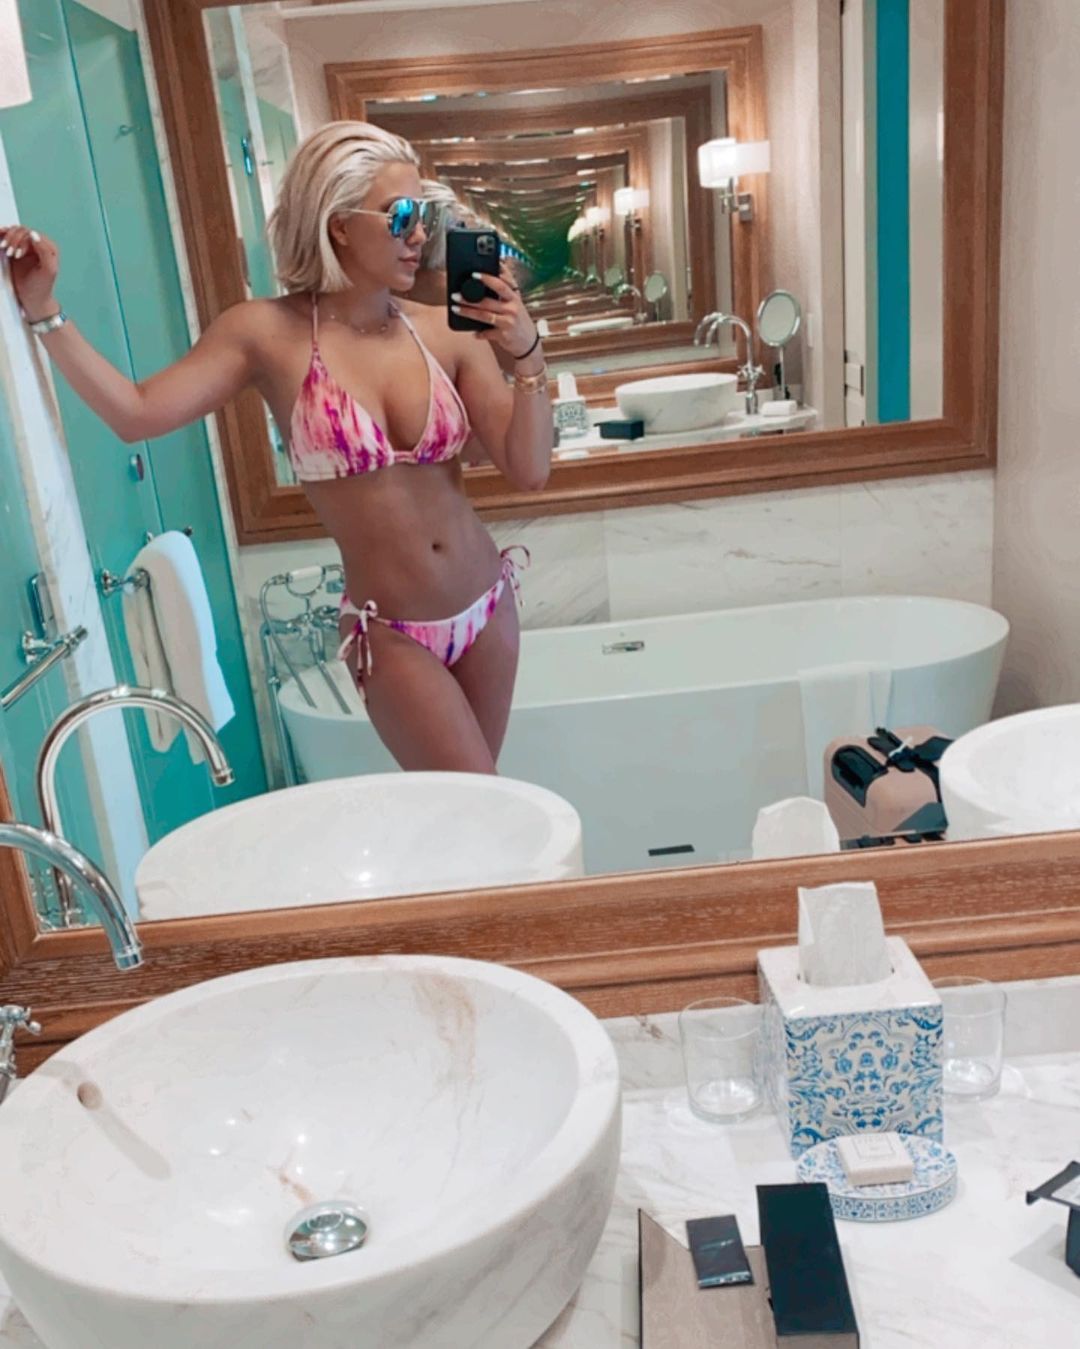 Savannah Chrisley bikini selfie